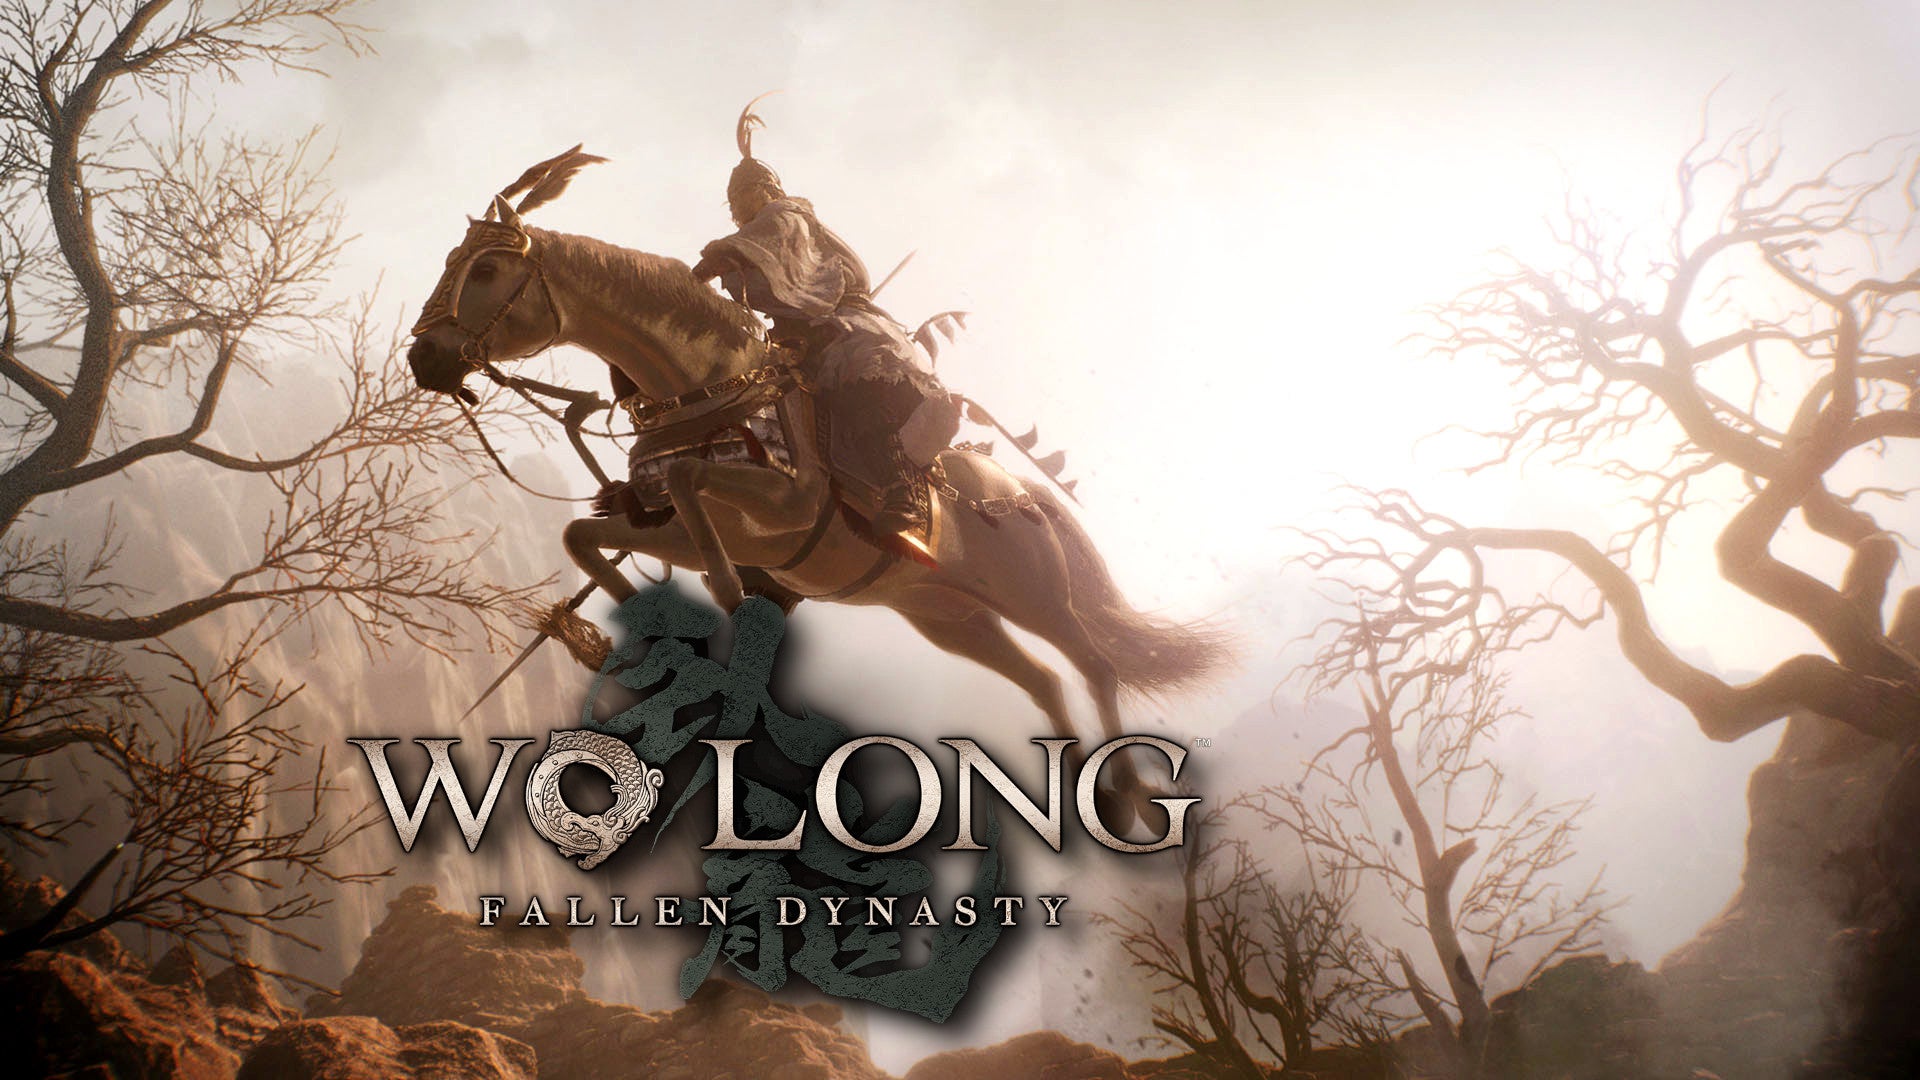 #Wo Long: Hinfallen Dynasty: Erster Gameplay-Trailer zeigt Kämpfe und Gegner